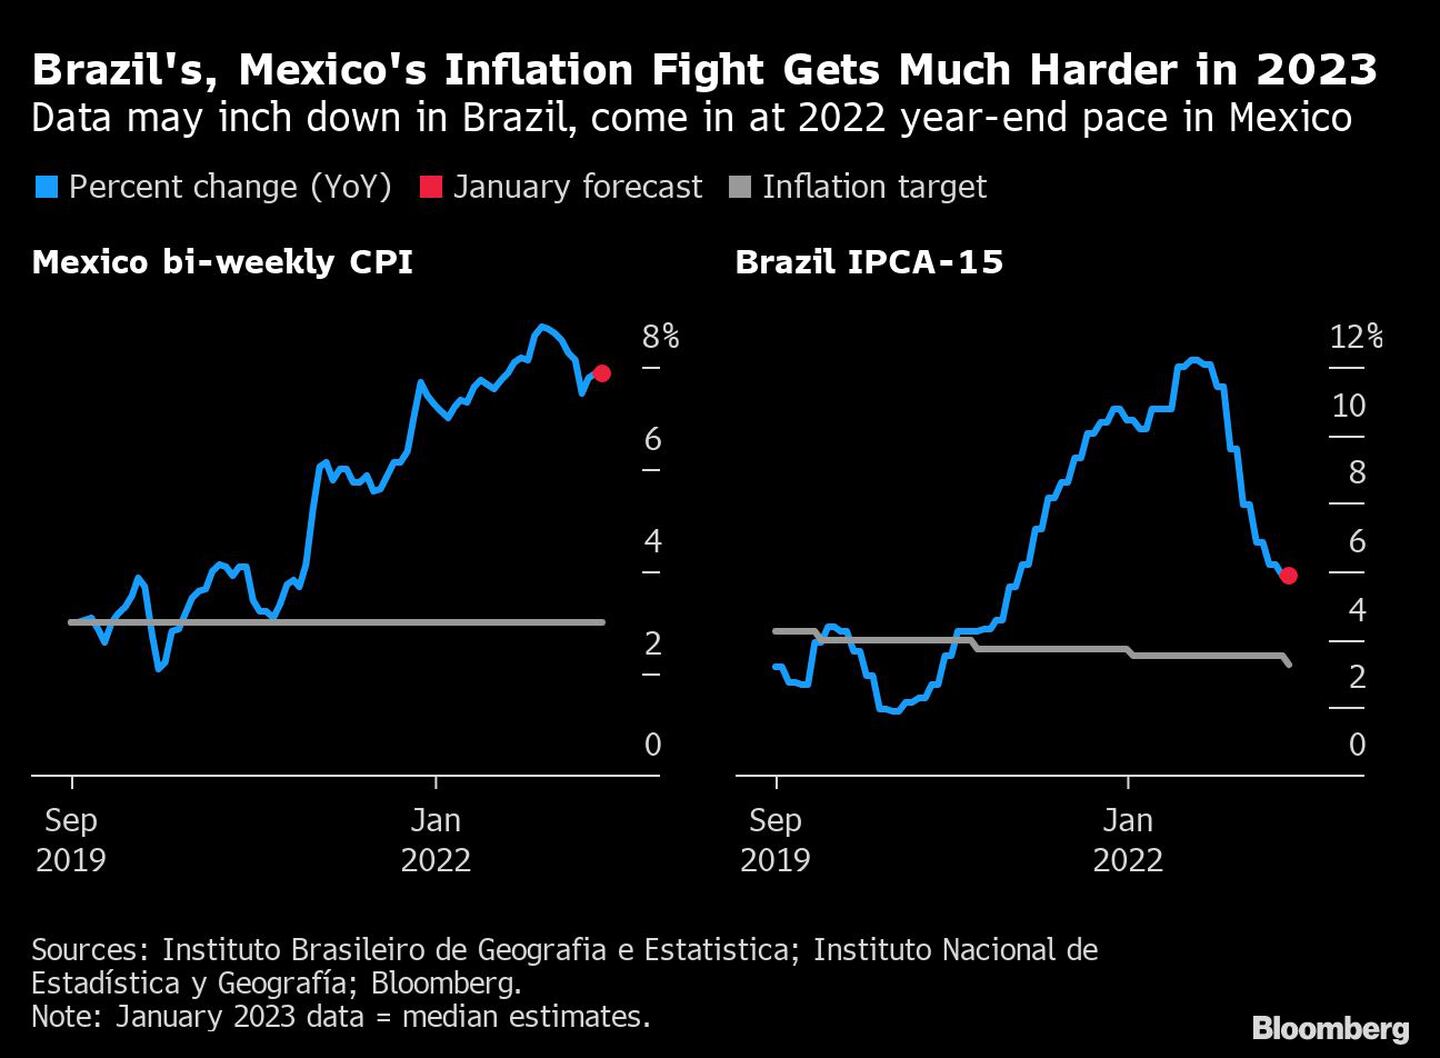 La lucha contra la inflación en Brasil y México será mucho más dura en 2023.dfd